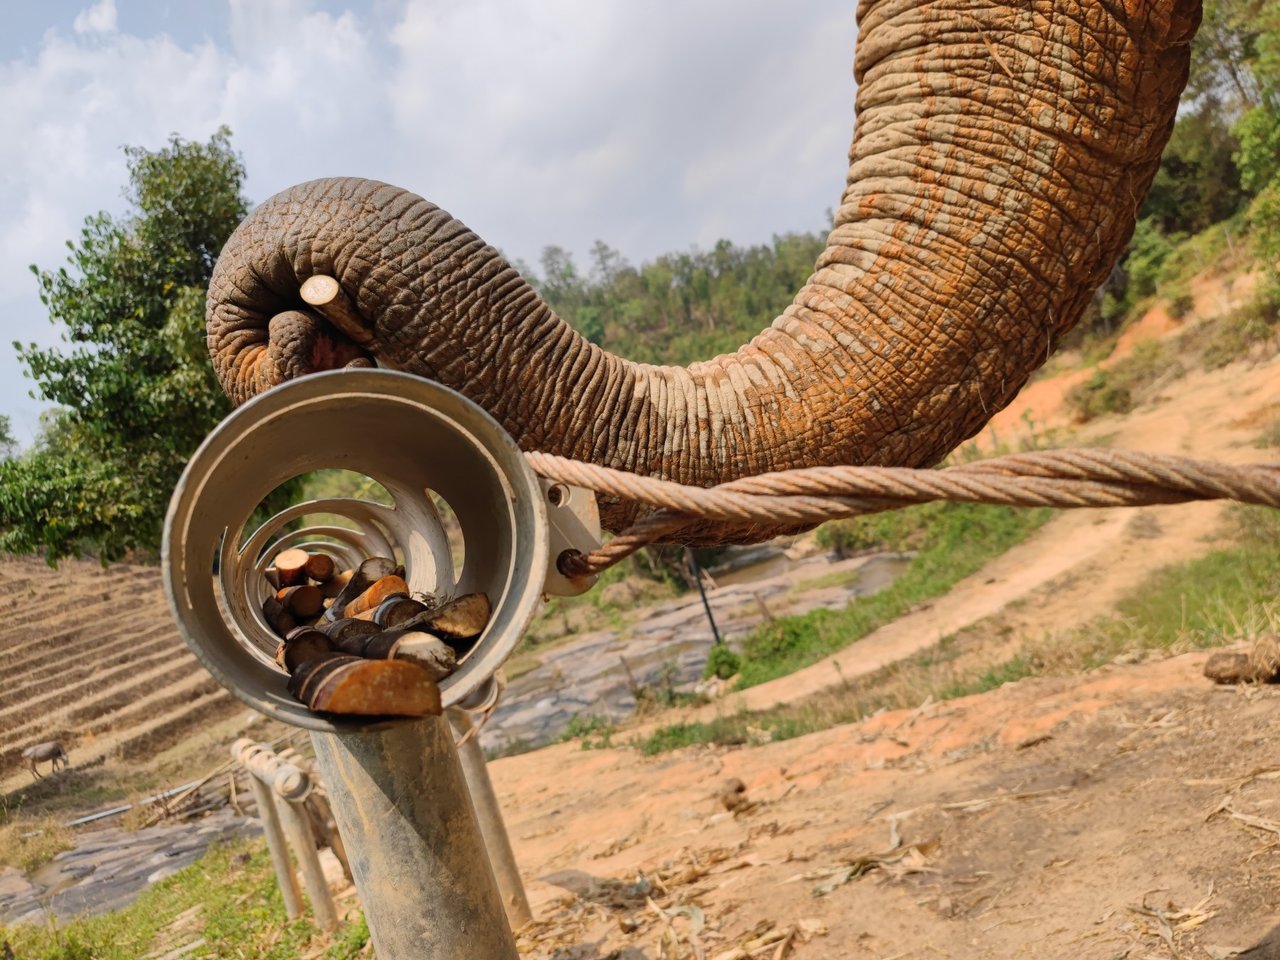 Dois elefantes adultos na natureza, um deitado e outro em pé, com as trombas entrelaçadas